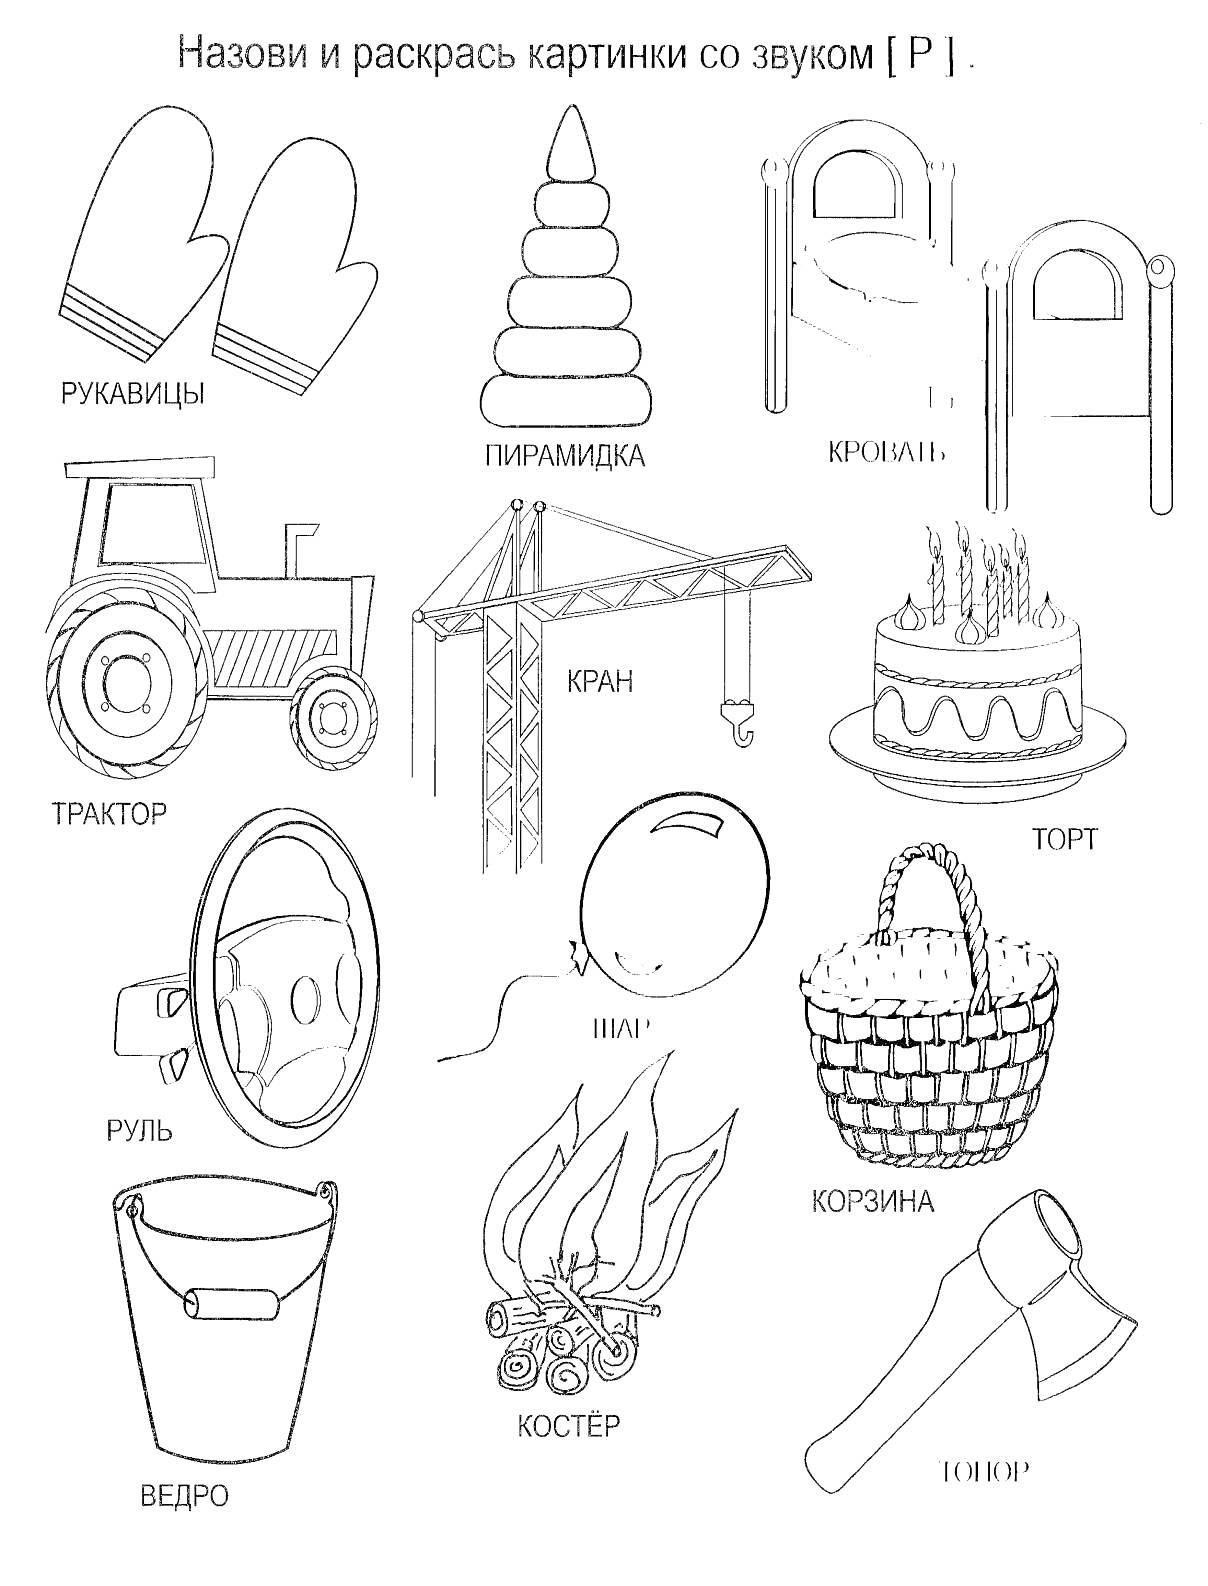 Логопедическая раскраска со словами на звук [Р]: рукавицы, пирамидка, кровать, трактор, кран, торт, руль, шар, корзина, ведро, костёр, топор.